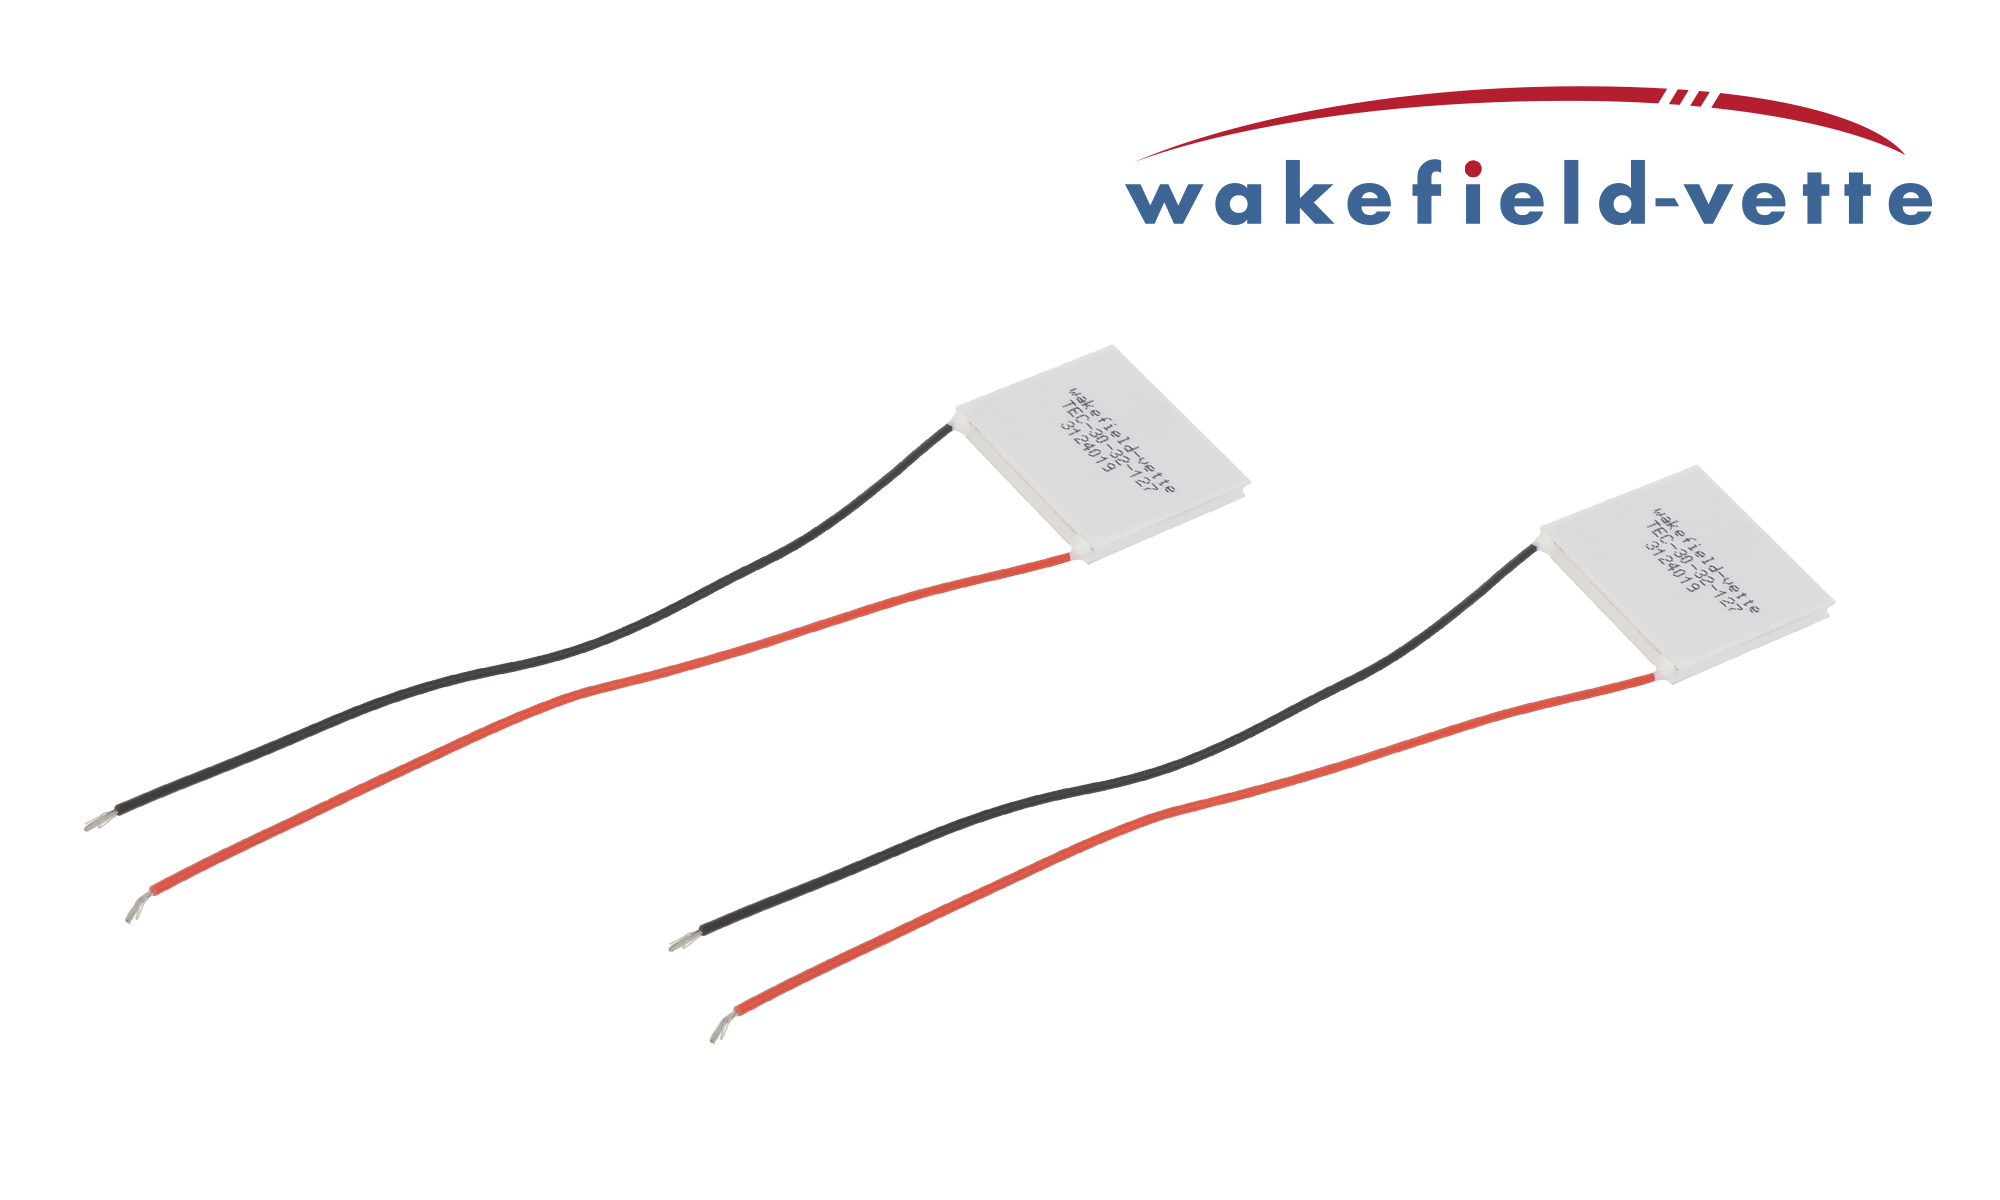 Peltier modules by Wakefield-Vette